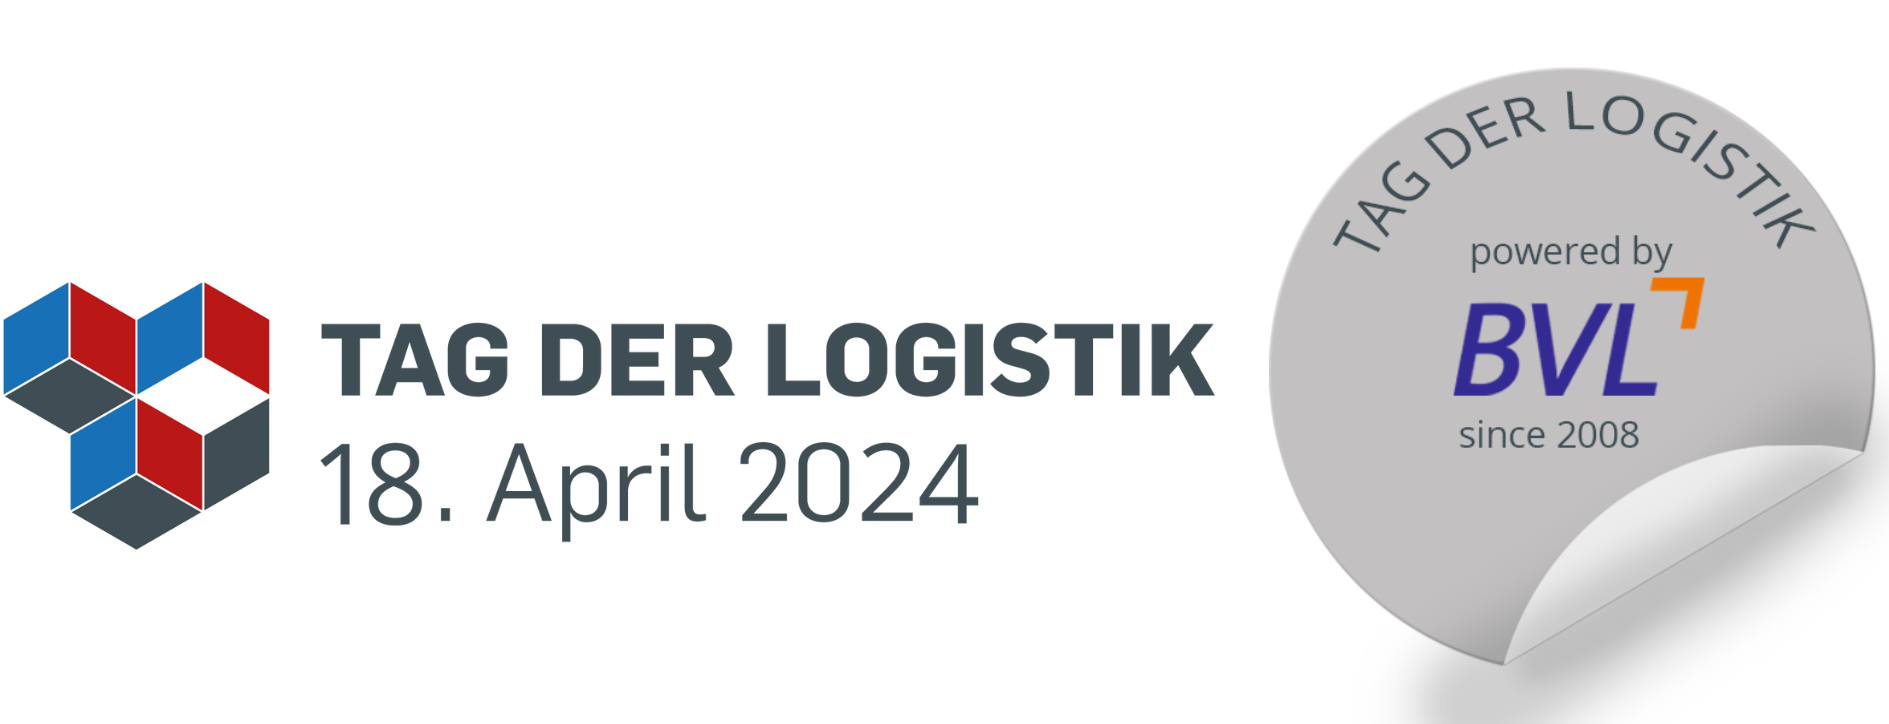 Tag der Logistik 2024